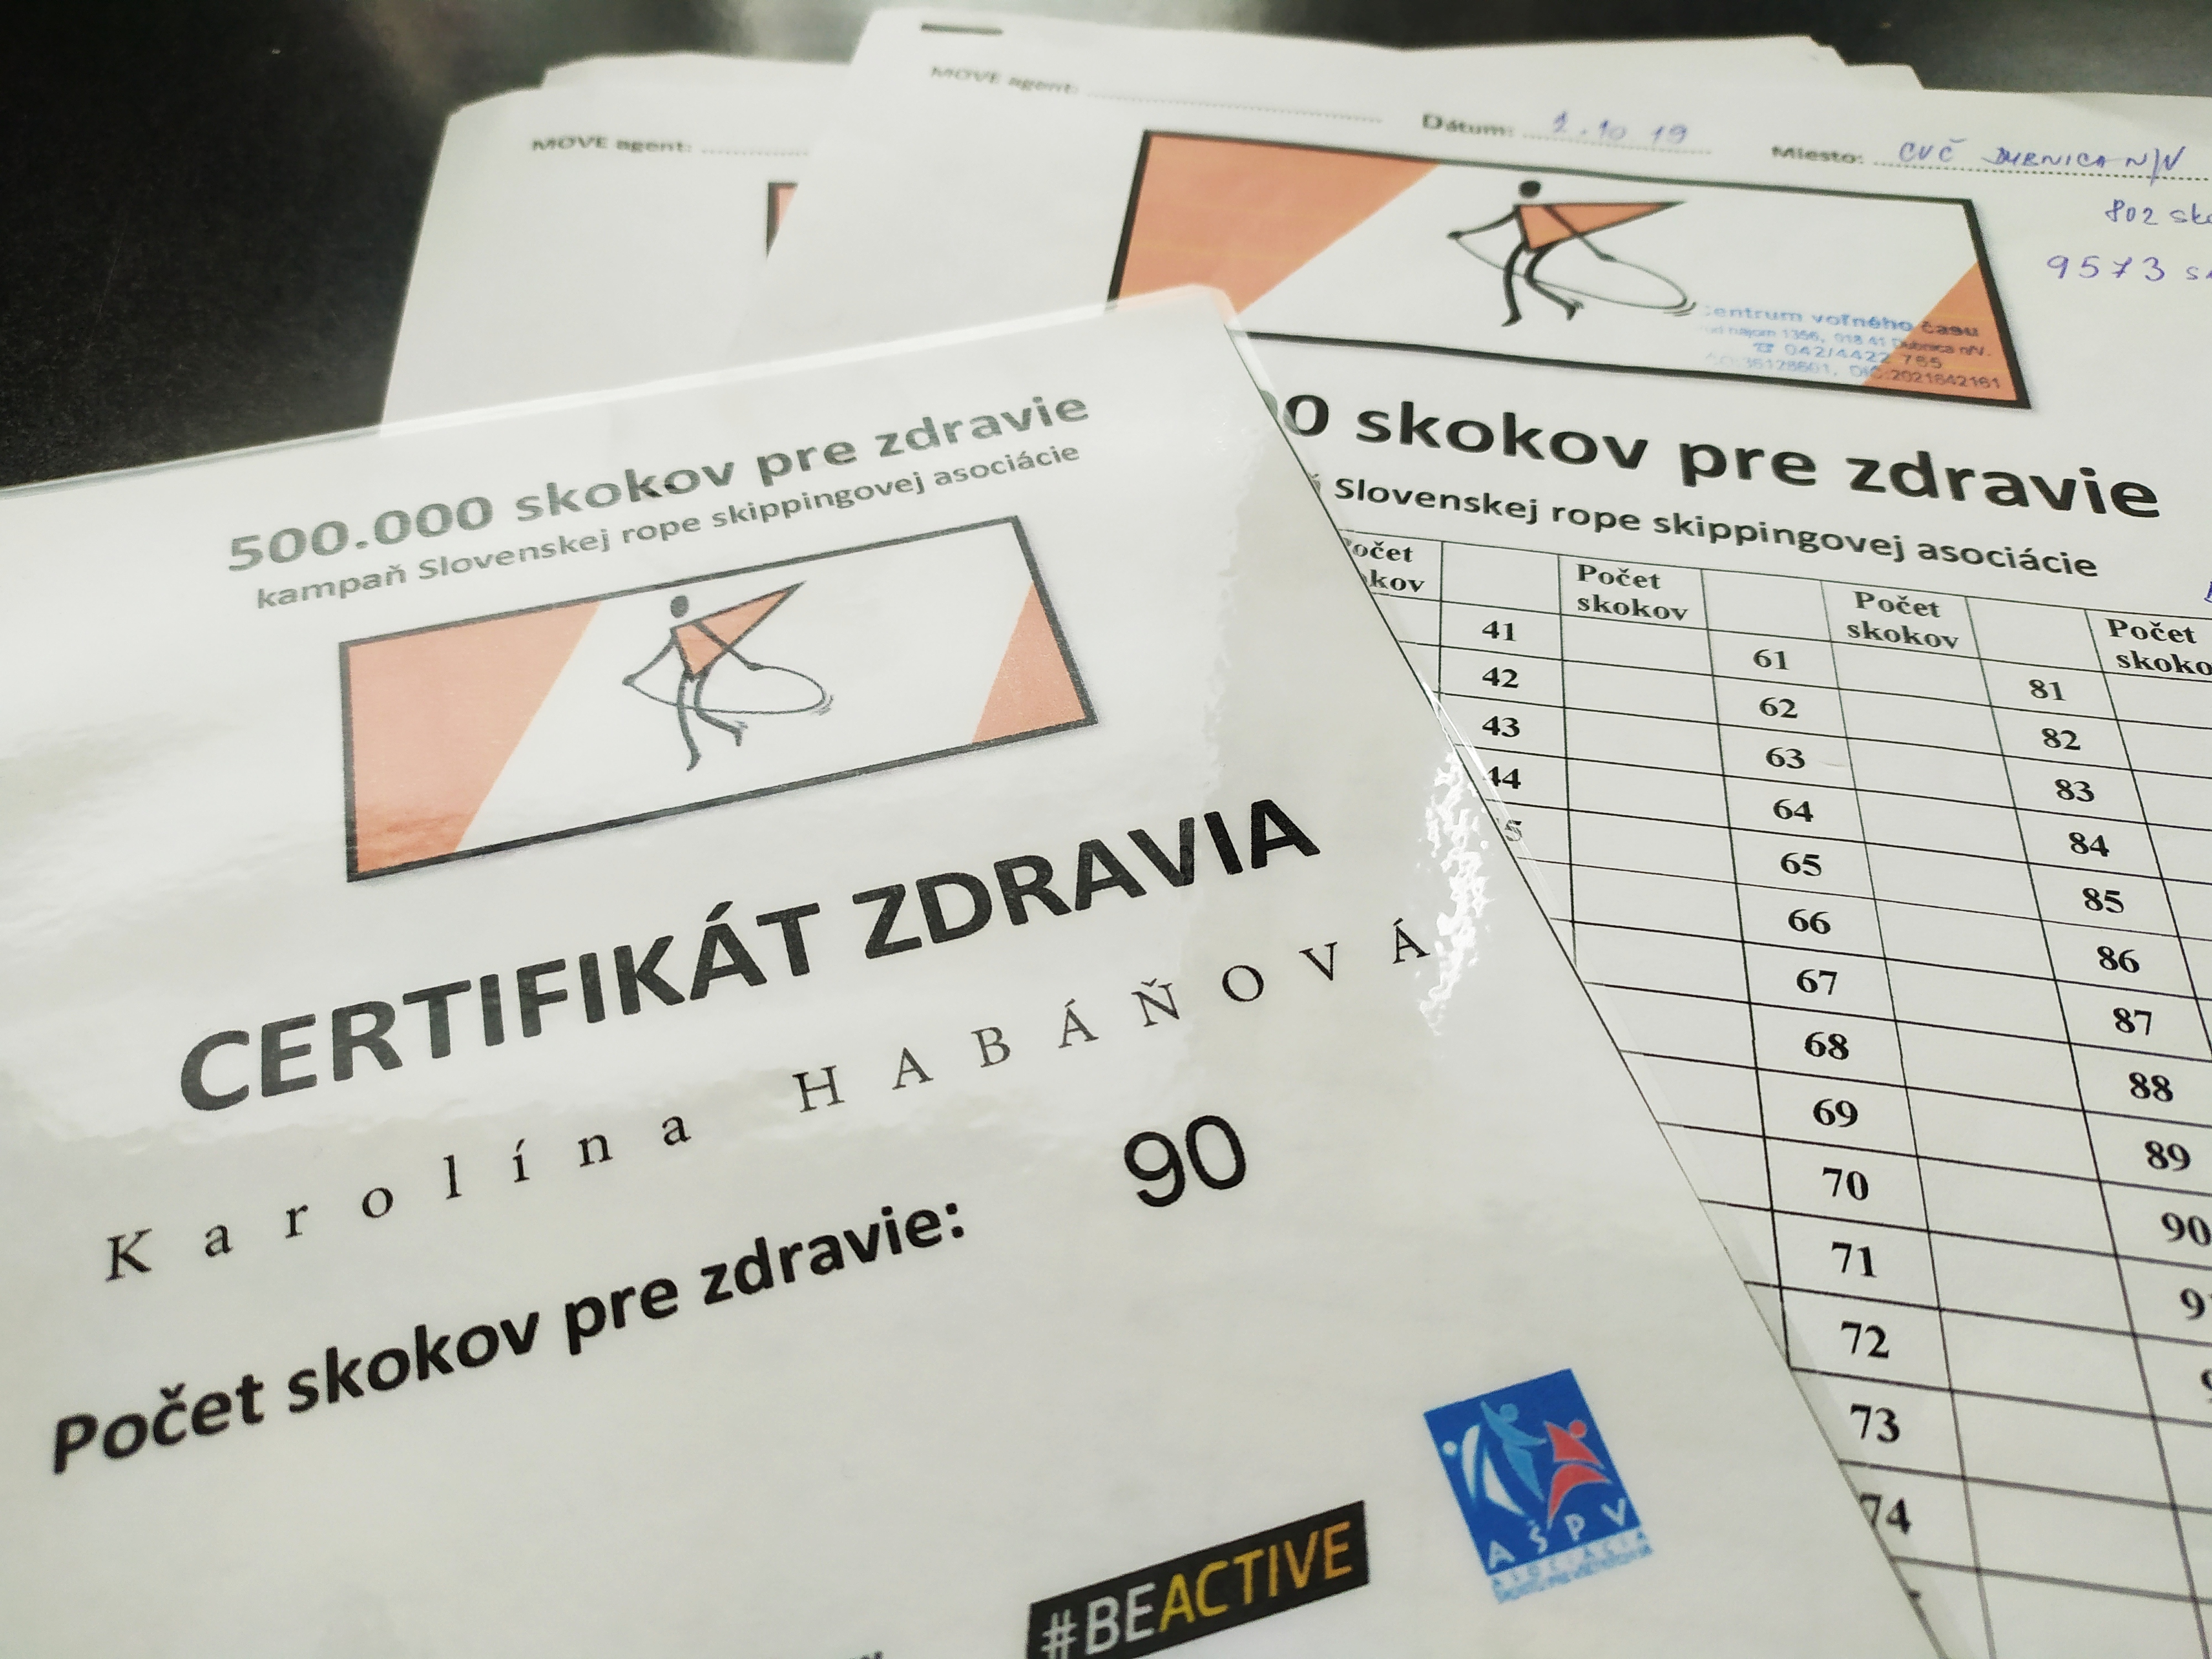 Aj naše CVČ Dubnica nad Váhom sa zapojilo do celoslovenskej kampane 500.000 skokov pre zdravie, ktorej cieľom je naskákať 500.000 skokov cez švihadlo.